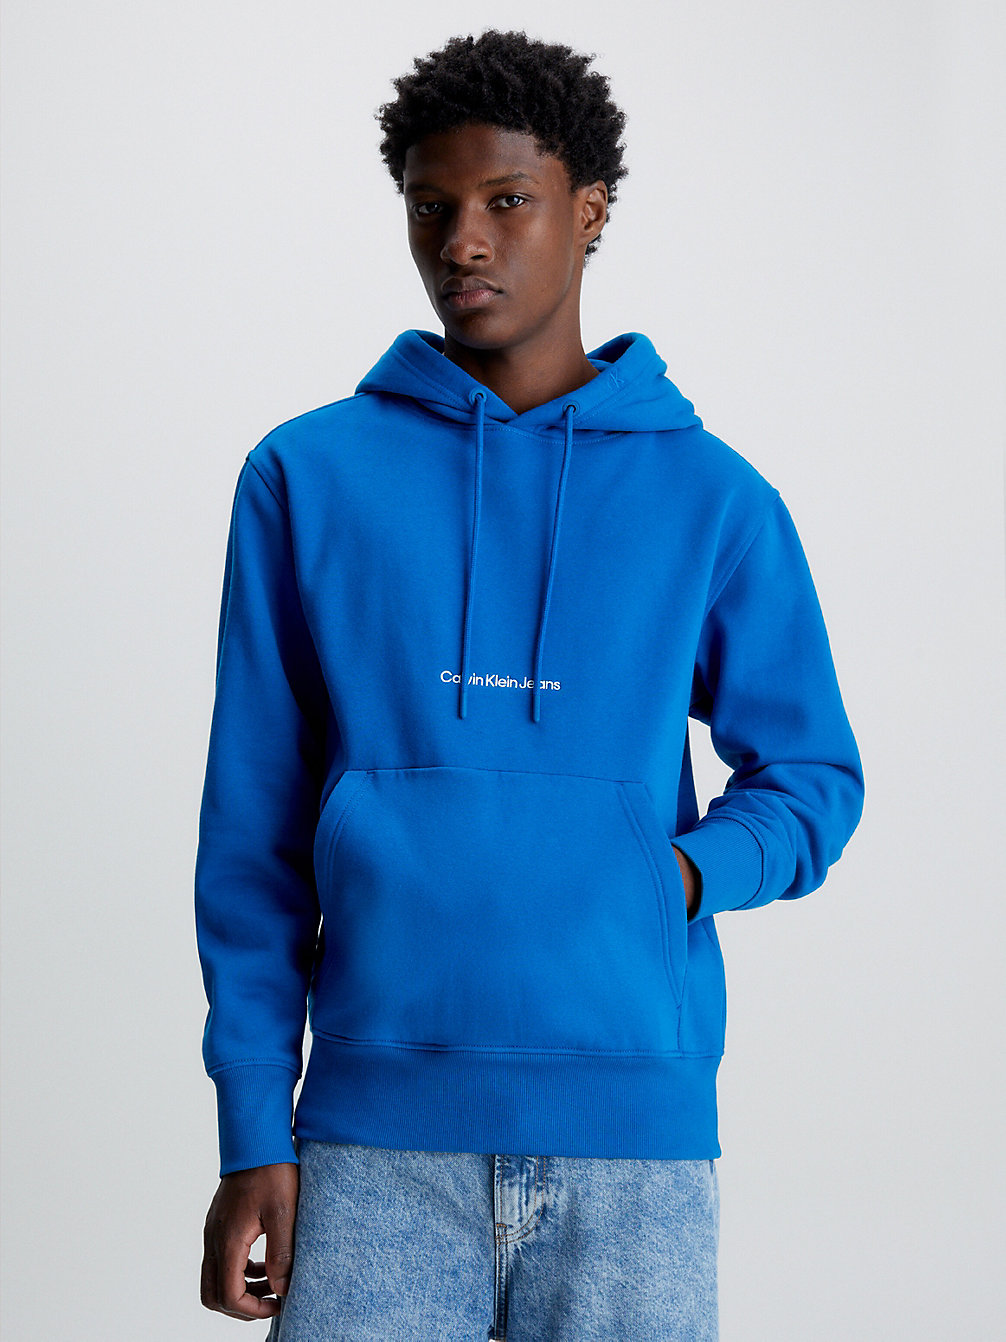 TARPS BLUE > Bluza Z Kapturem Z Logo Z Bawełny Organicznej > undefined Mężczyźni - Calvin Klein